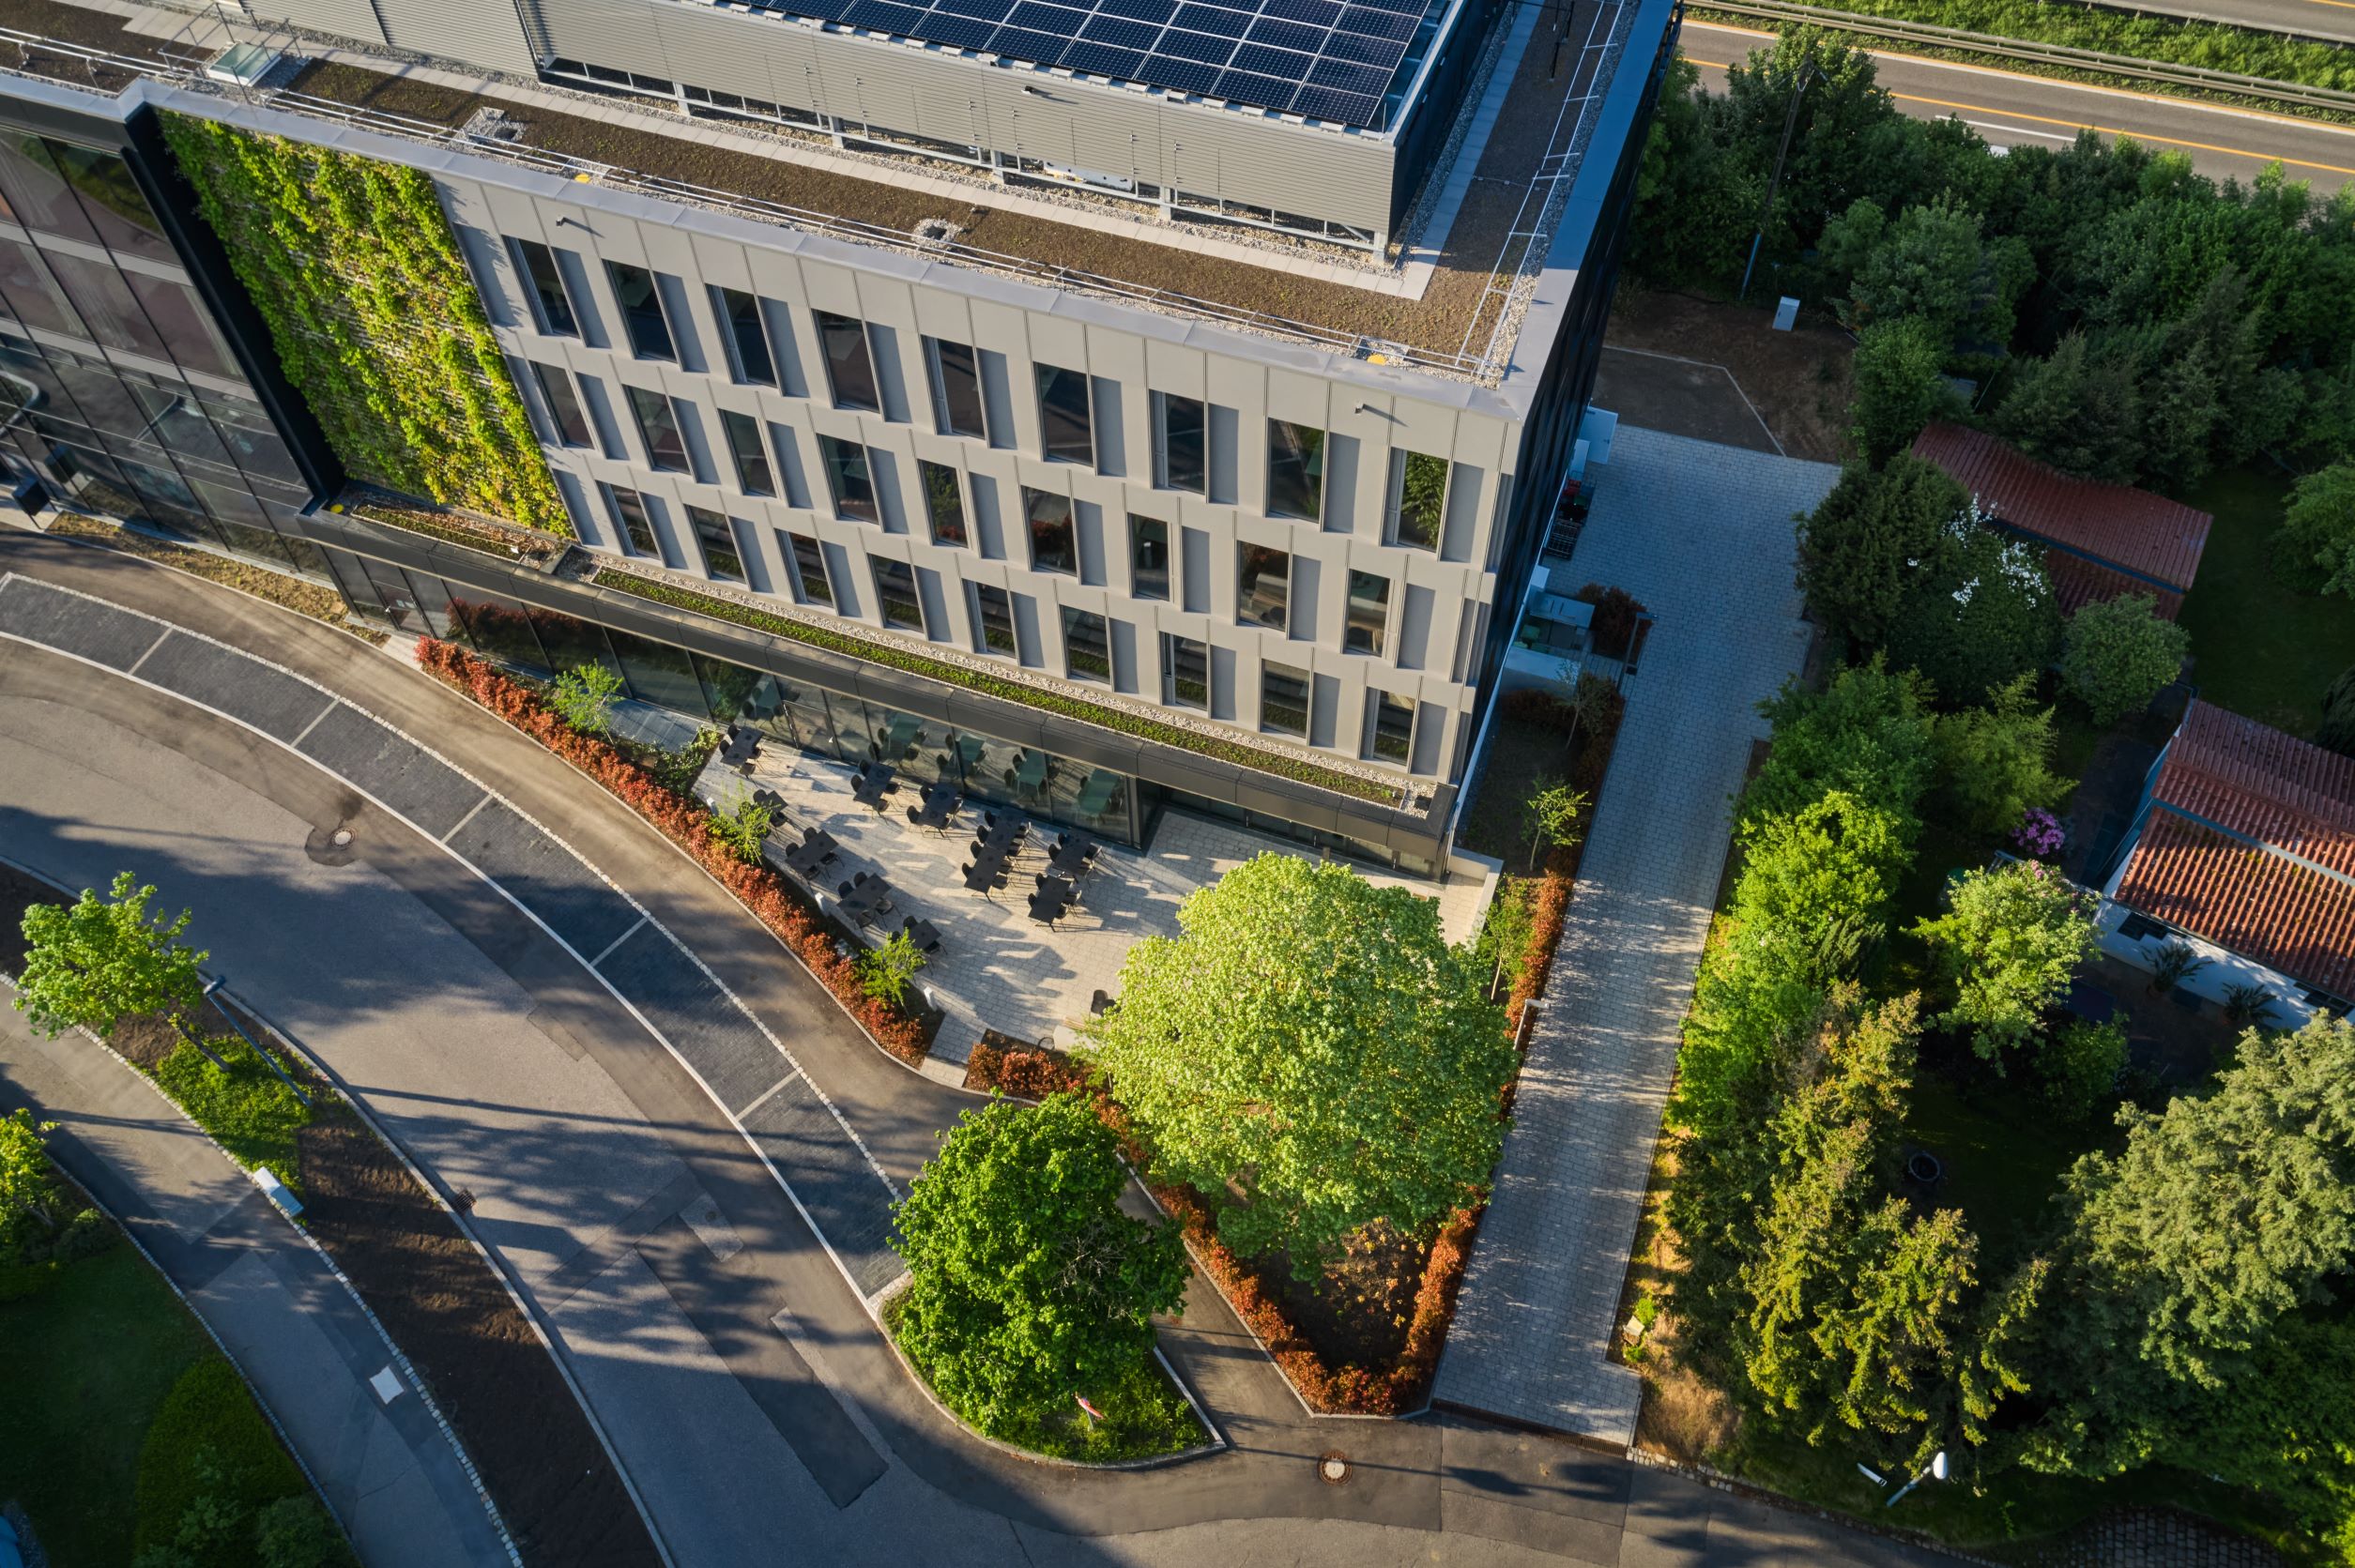  Nordfassade des Bürogebäudes Obere Waldplätze mit Grünfassade und Photovoltaikelementen auf dem Dach